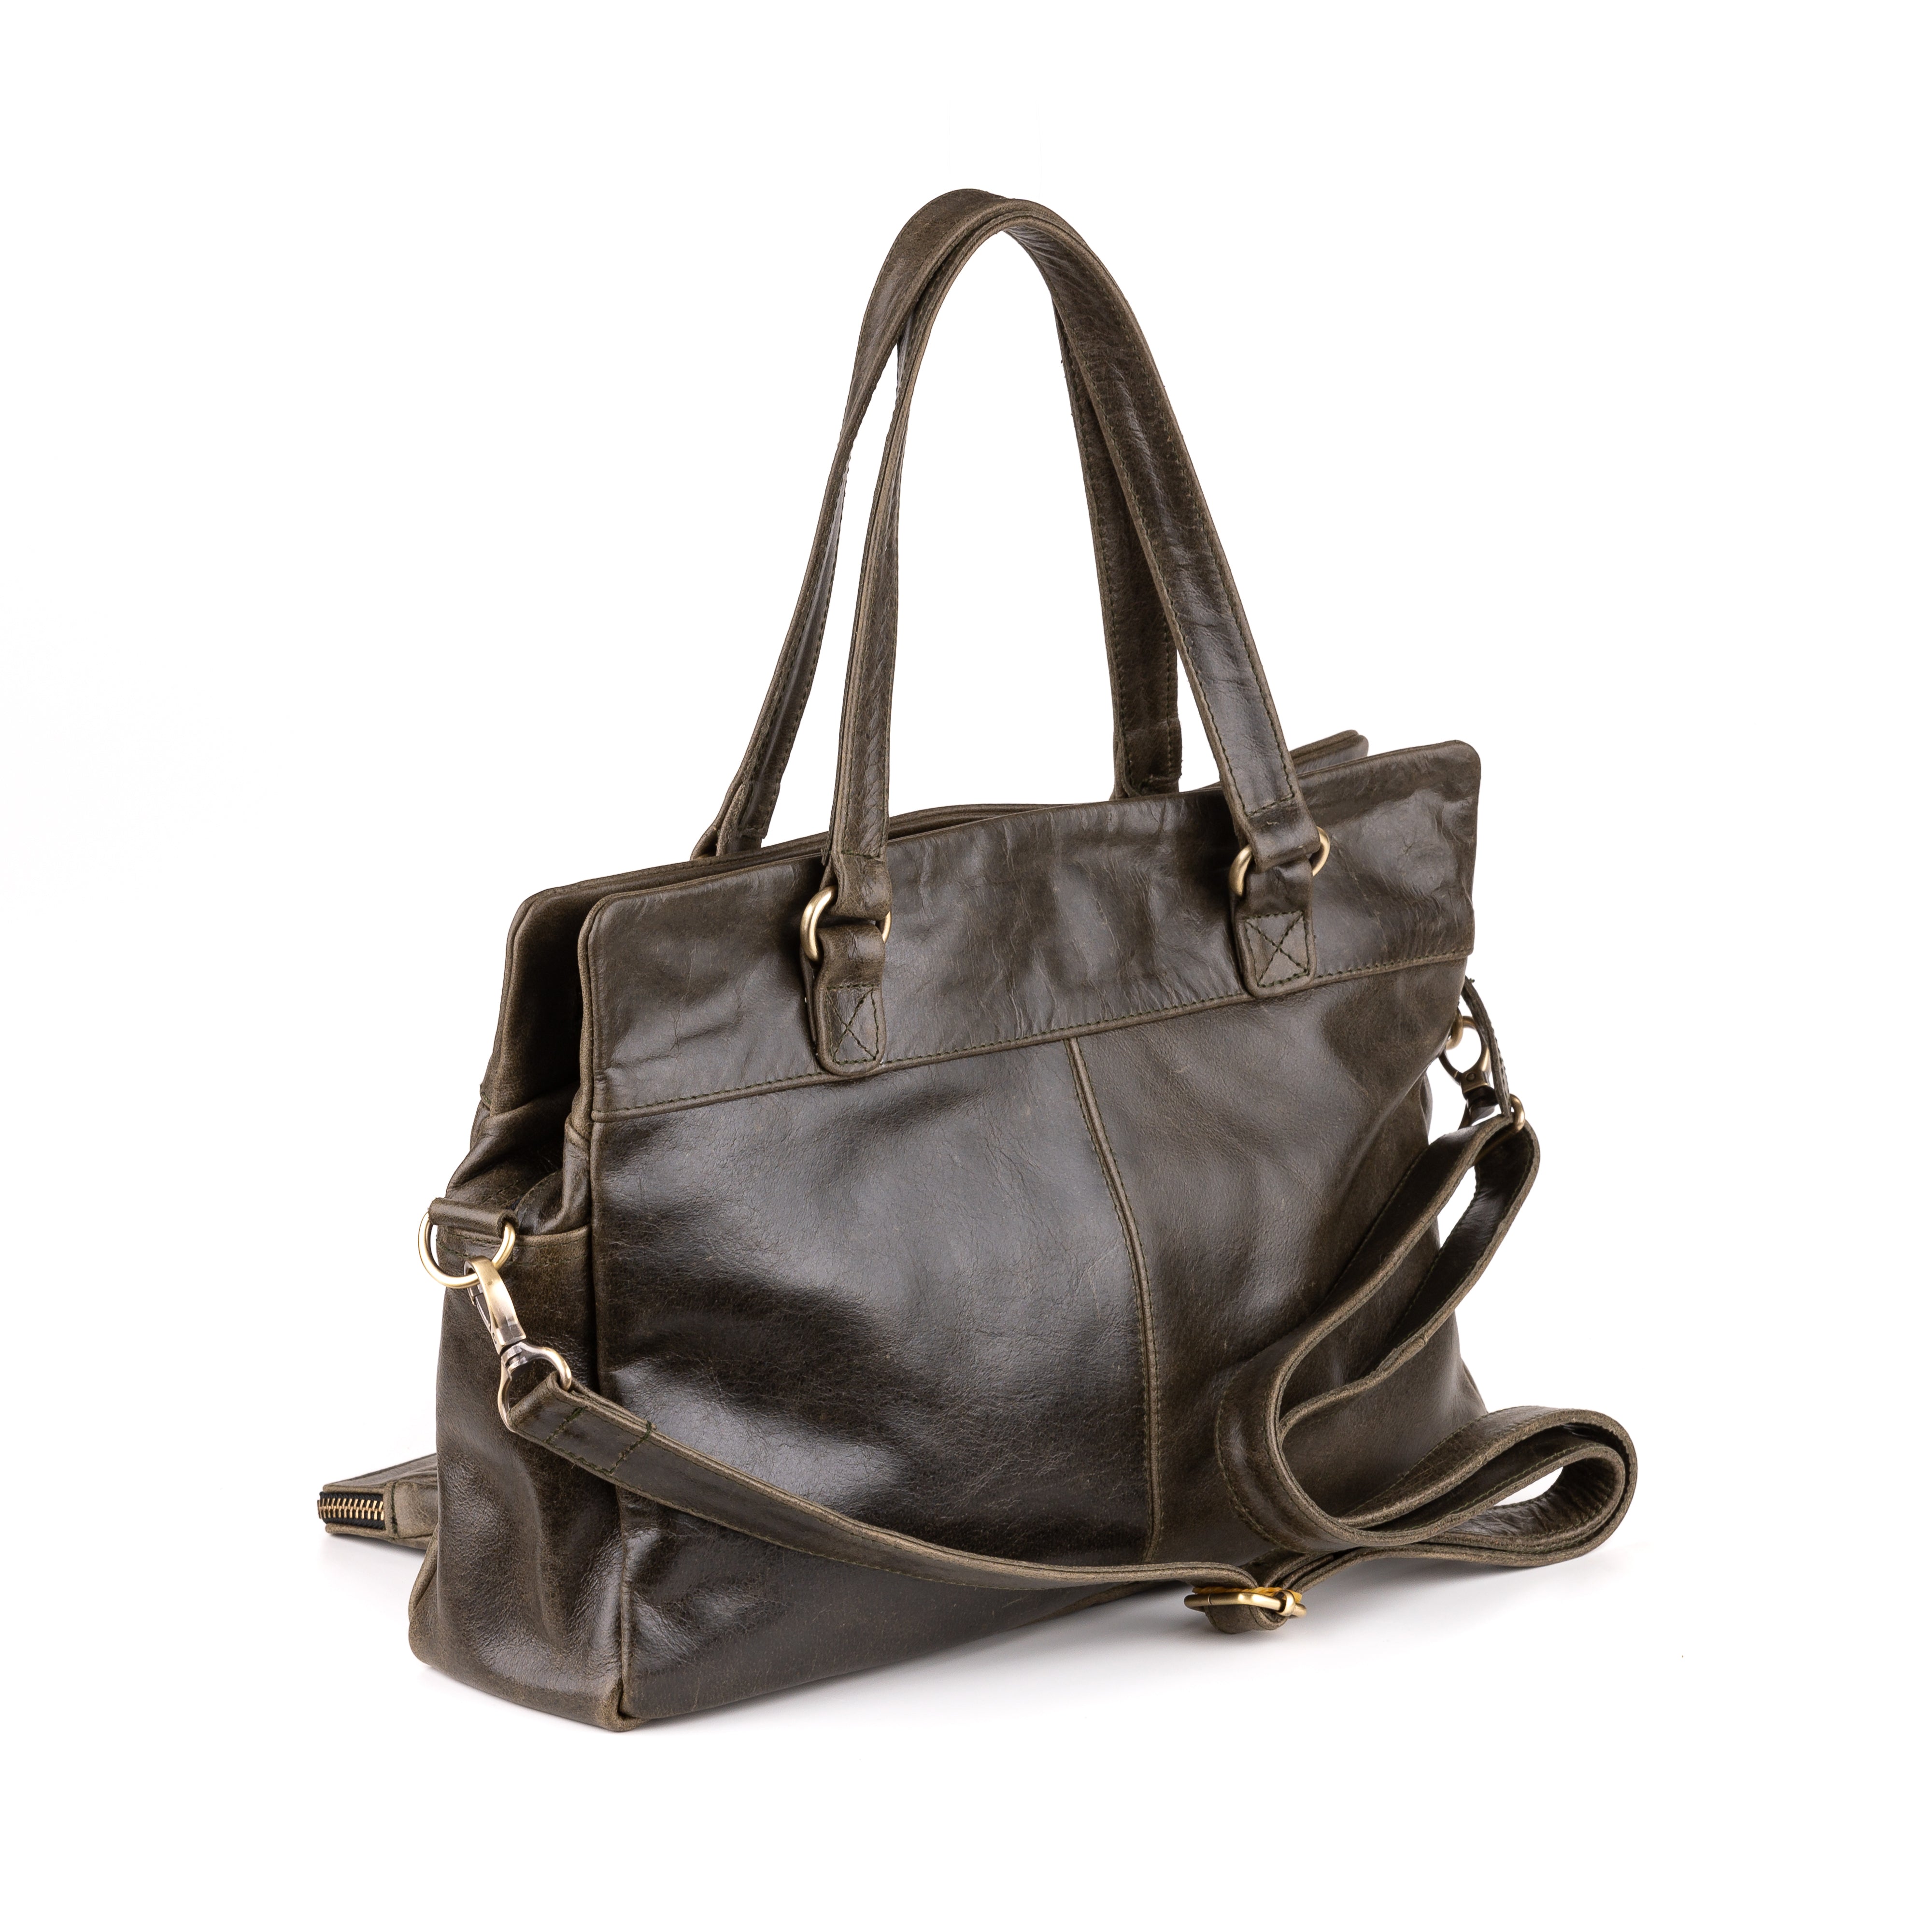 Arnhem Ladies Handbag Leather Olive - Kenya Leather